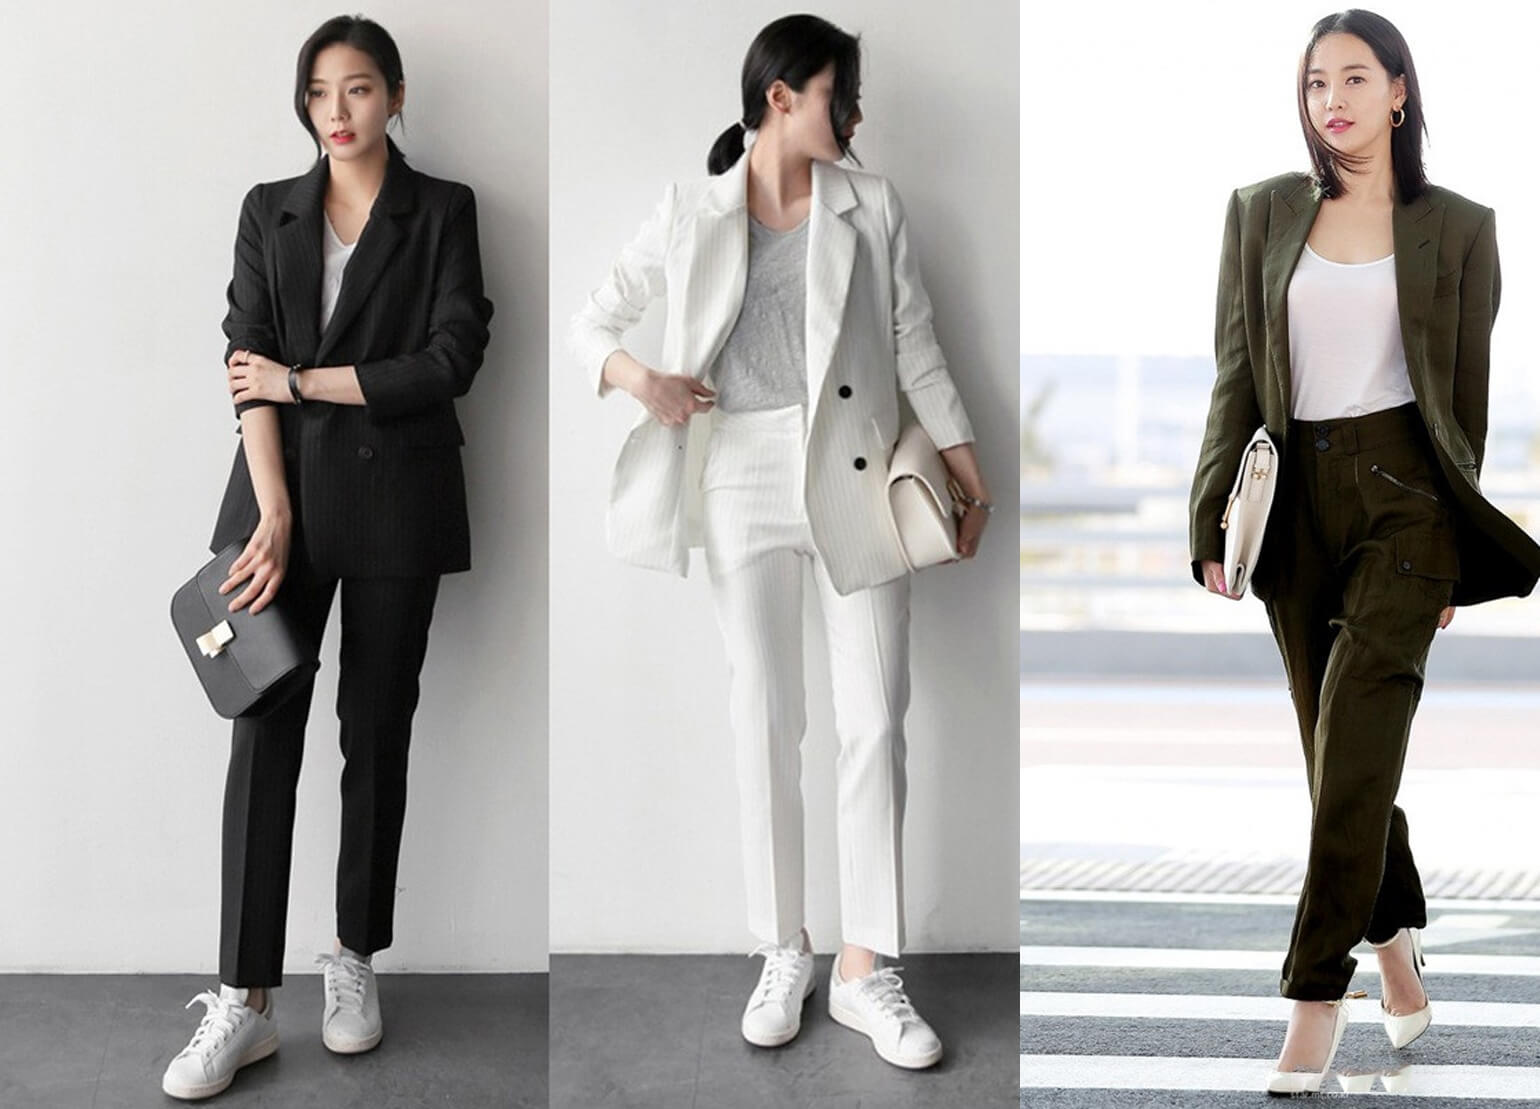 Bộ suit đúng chuẩn style Hàn giúp nàng vẫn rạng rỡ trong bộ đồ đi làm